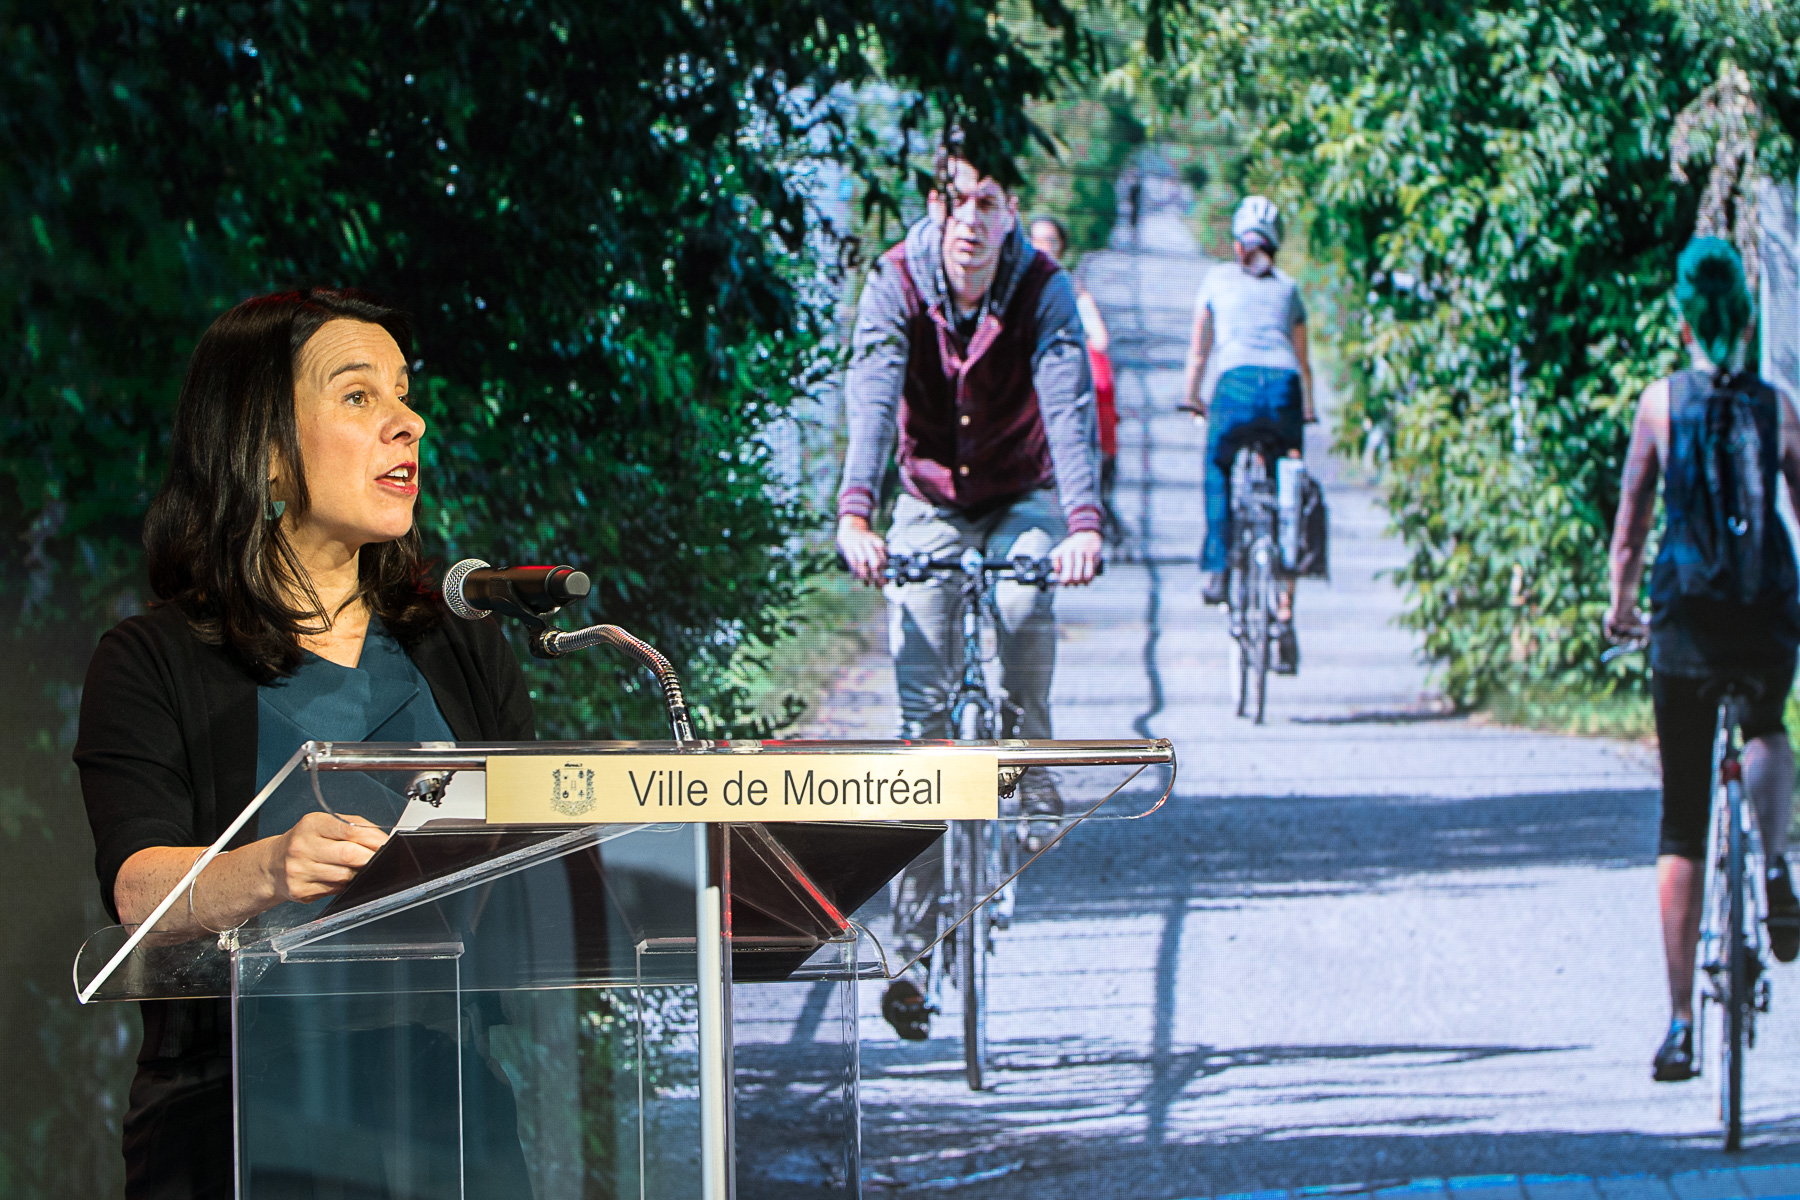 La mairesse Valérie Plante devant une affiche montrant le Réseau express vélo.